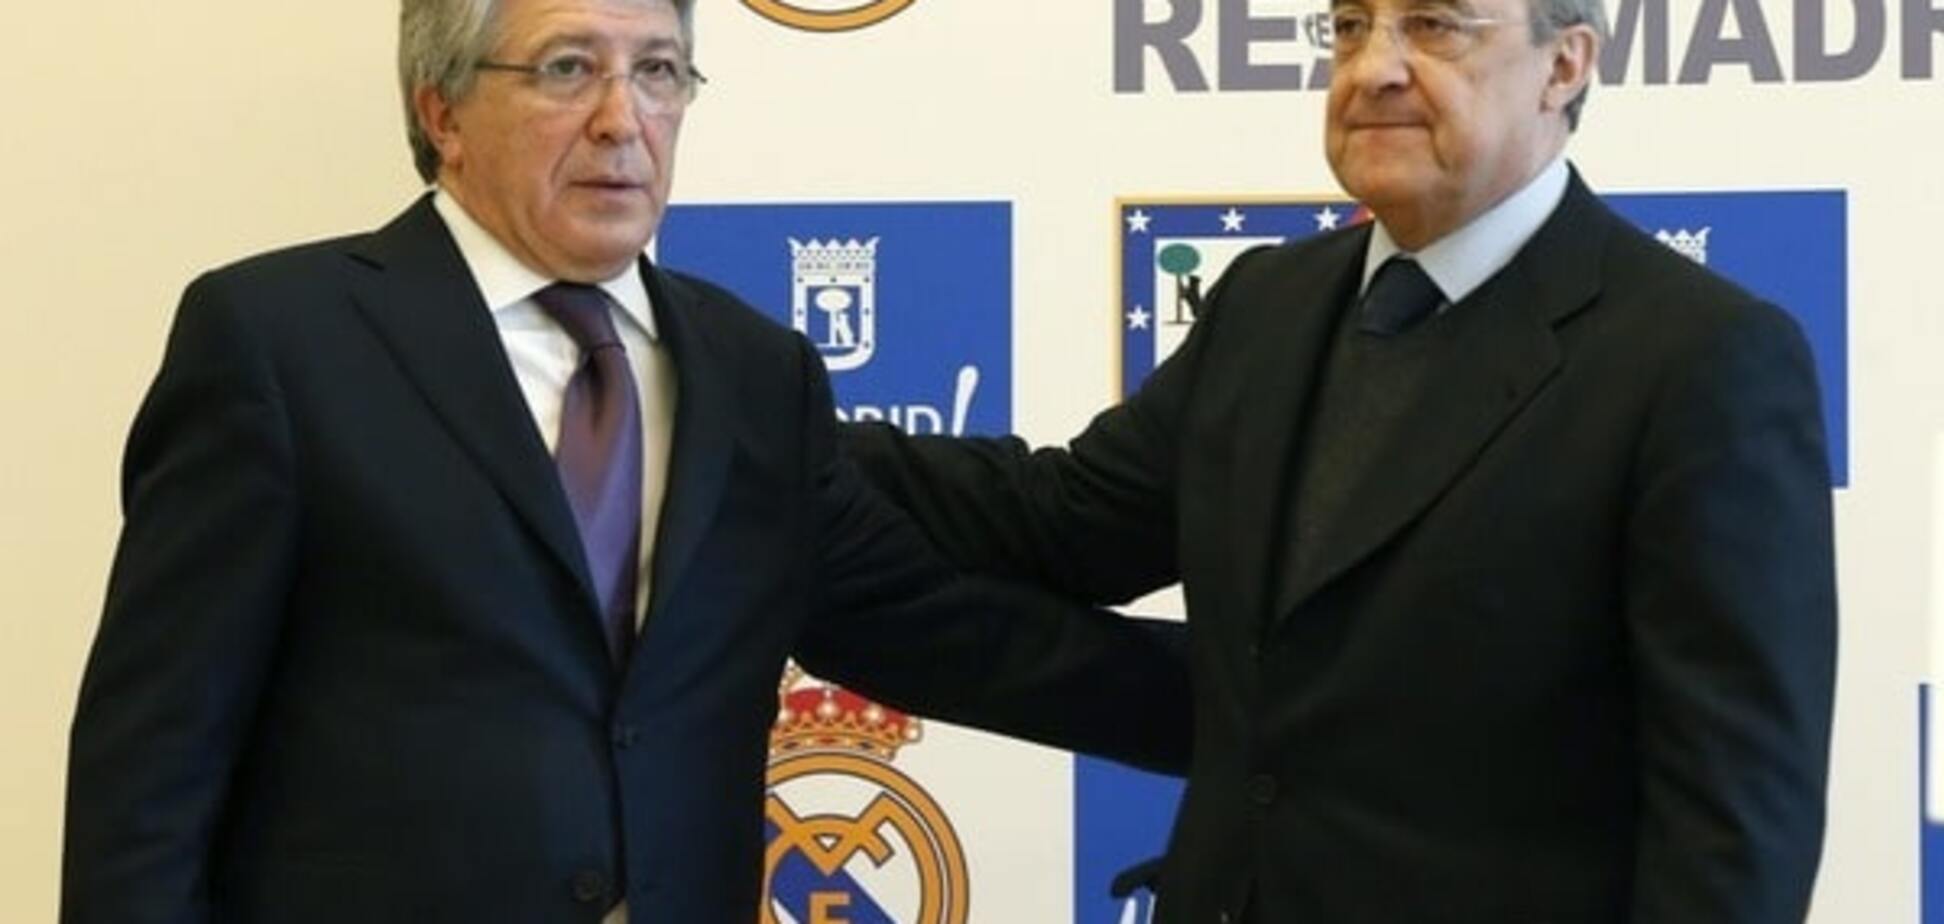 Официально: ФИФА запретила 'Реалу' покупать новых футболистов